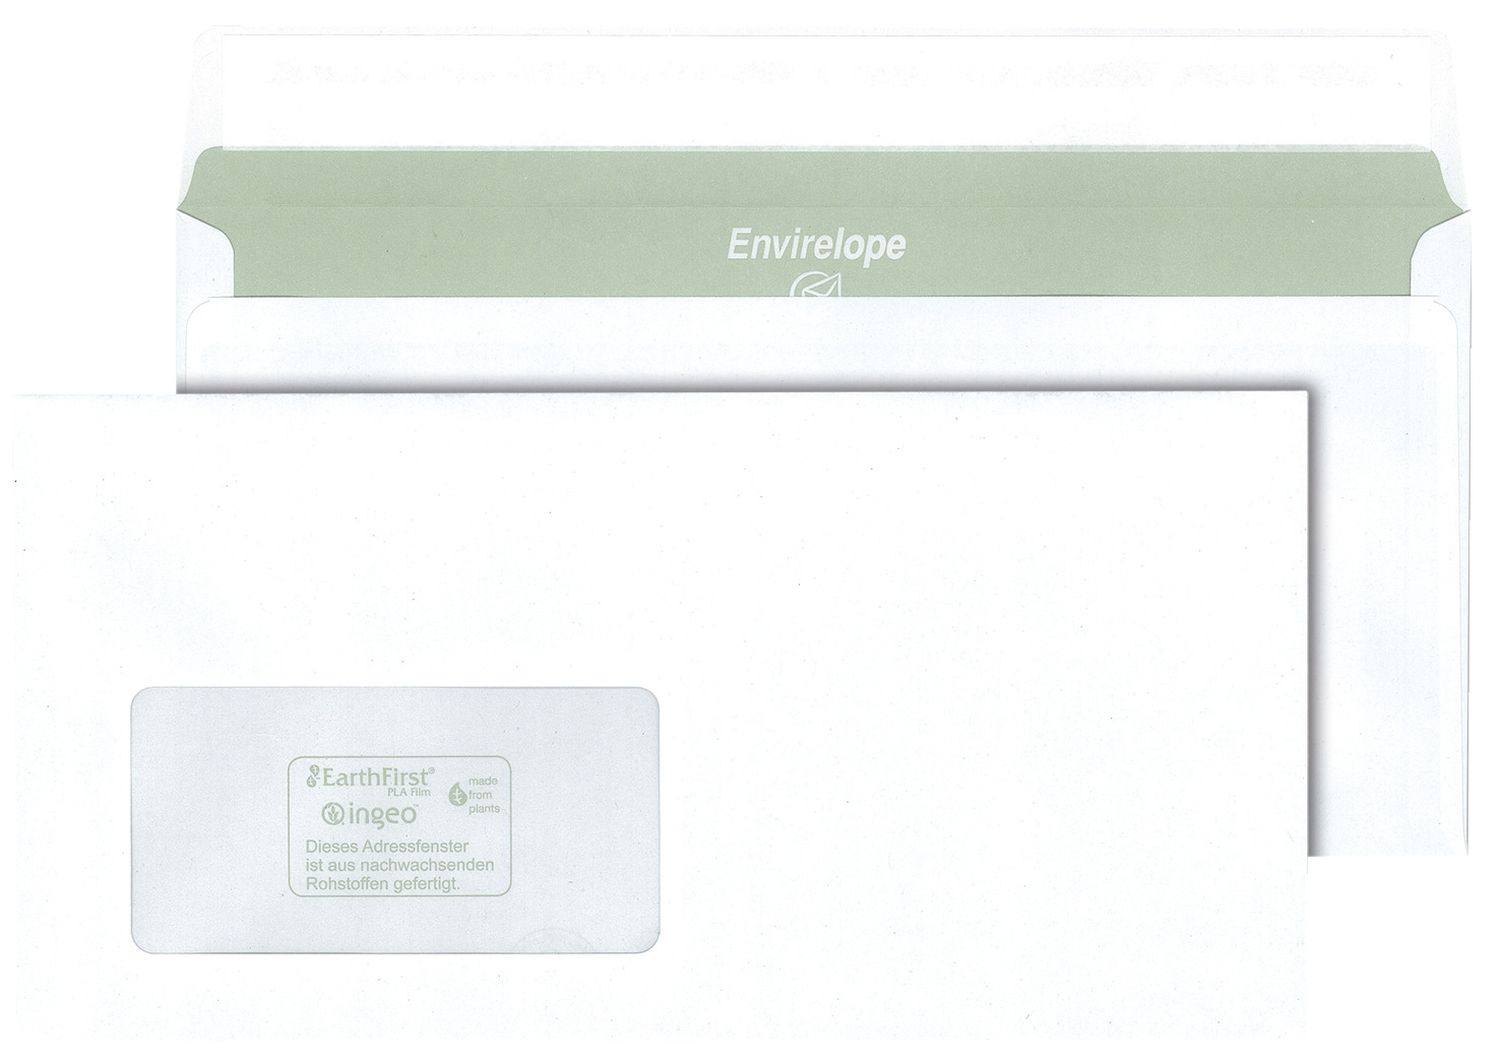 Briefumschlag Envirelope® 30005444, DIN lang, haftklebend, 75 g/qm, mit Fenster, 1.000 Stück